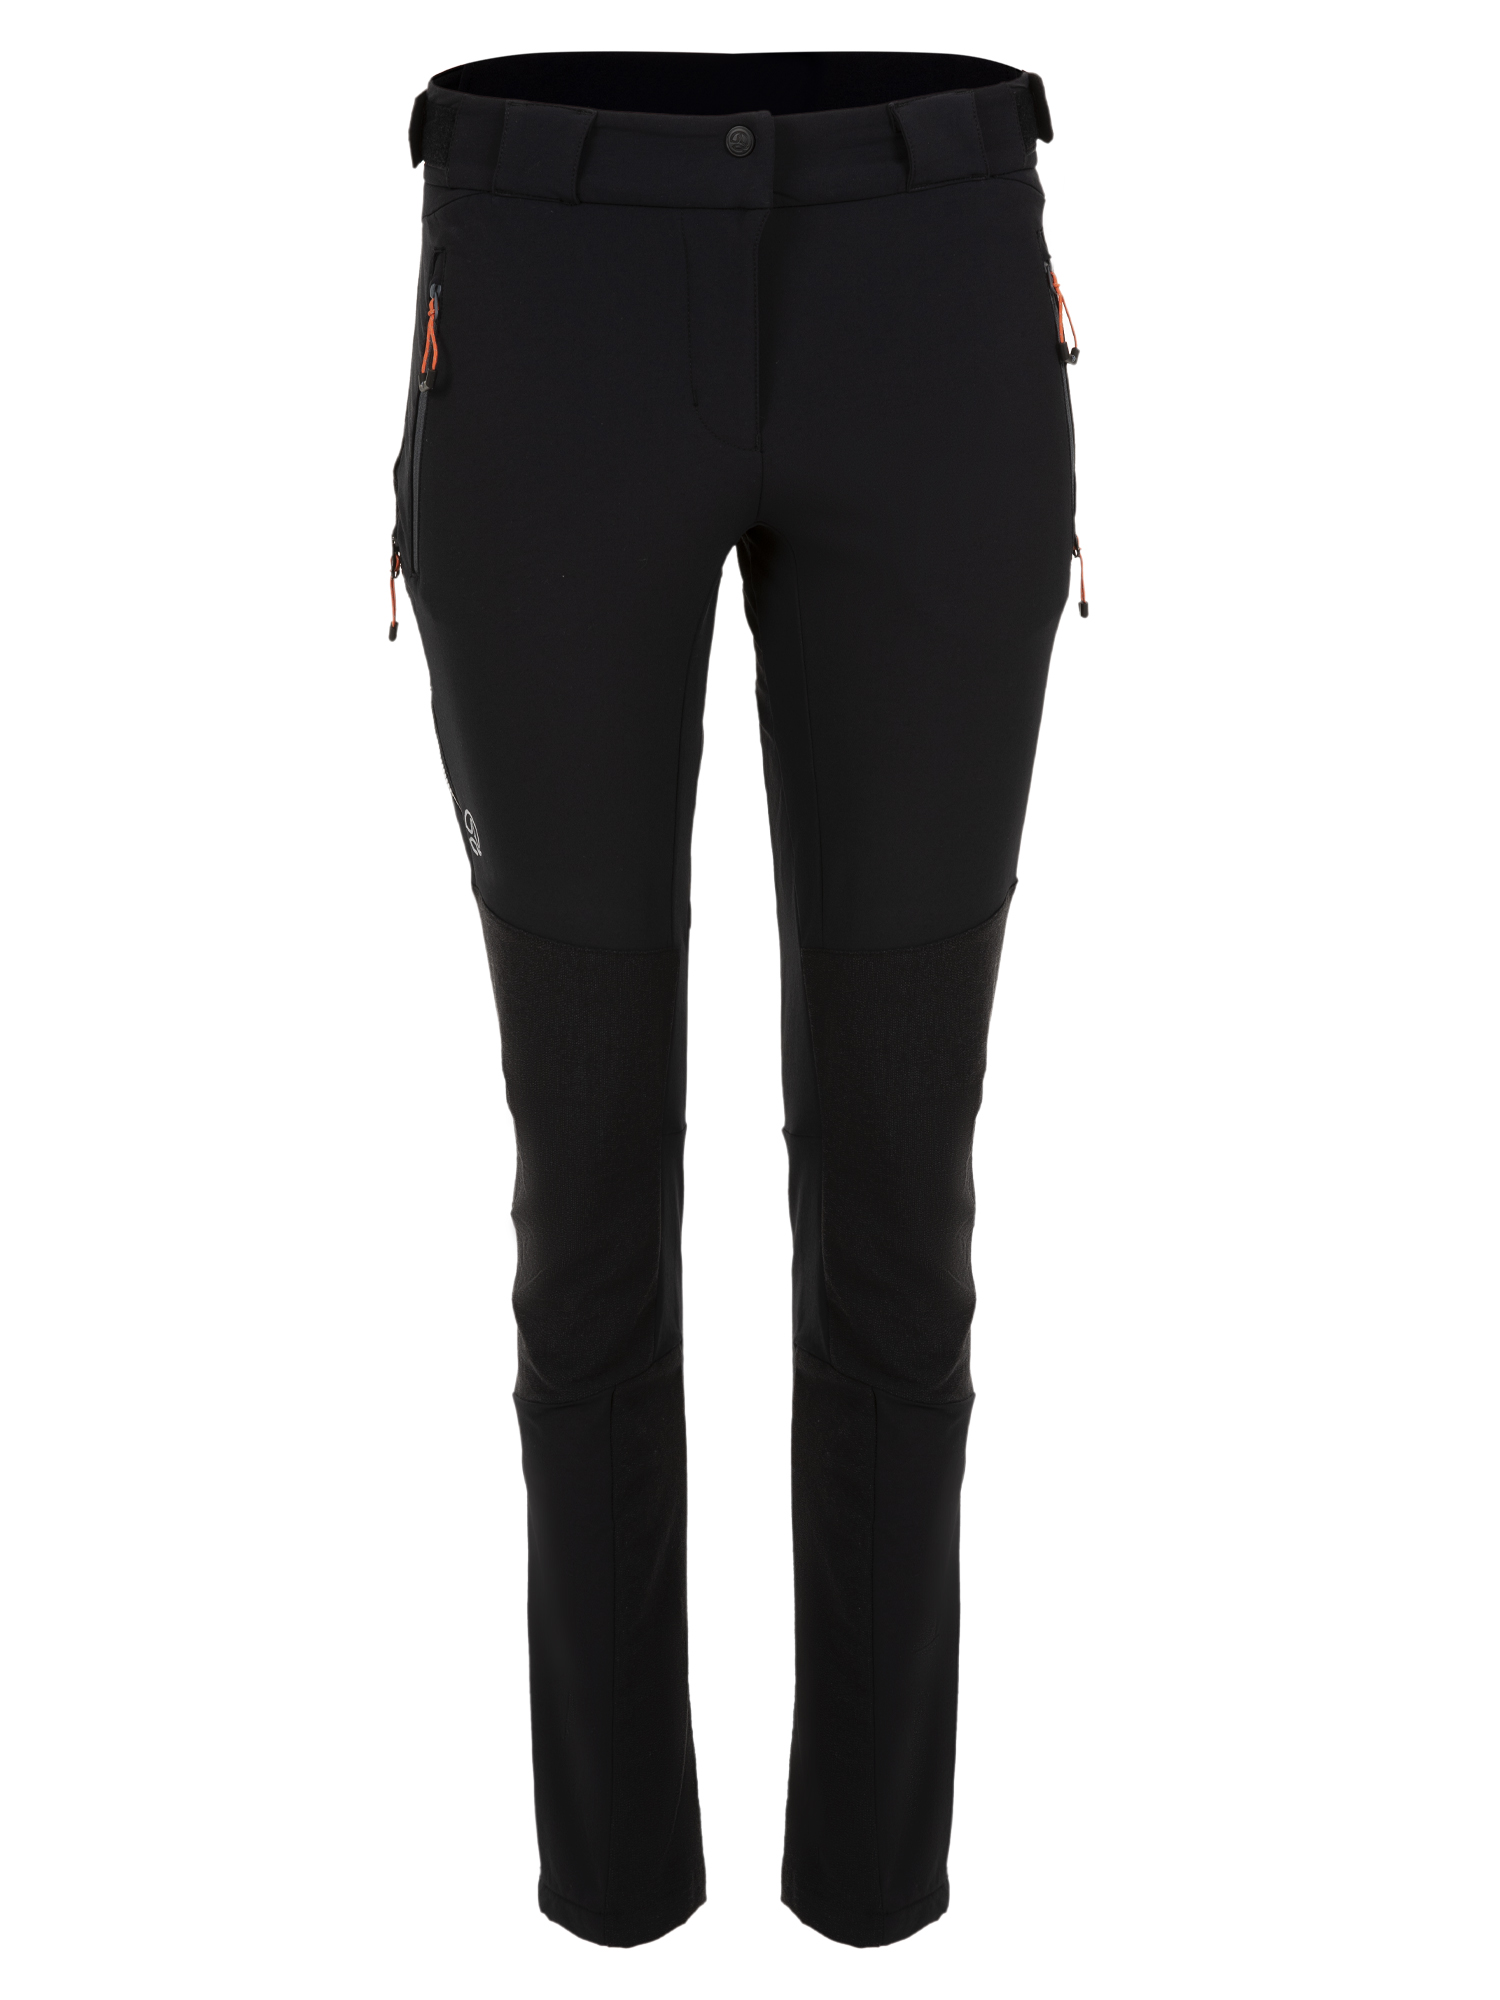 Спортивные брюки женские Ternua Elbrus Pt W черные 2XL